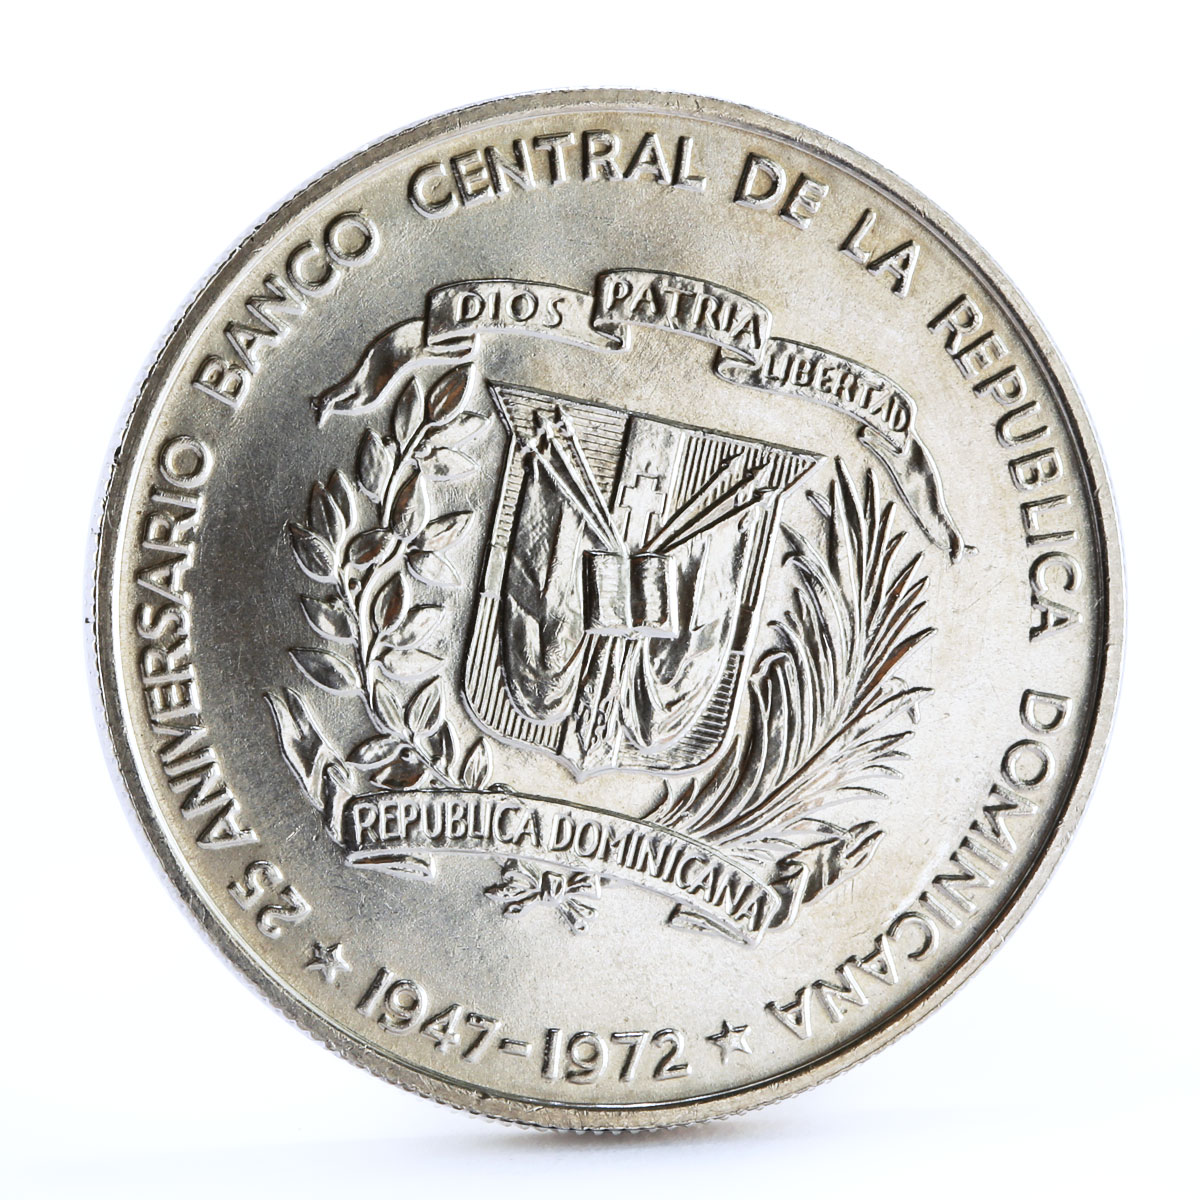 Dominican Republic 1 peso 25th Anniversary of Central Bank silver coin 1972